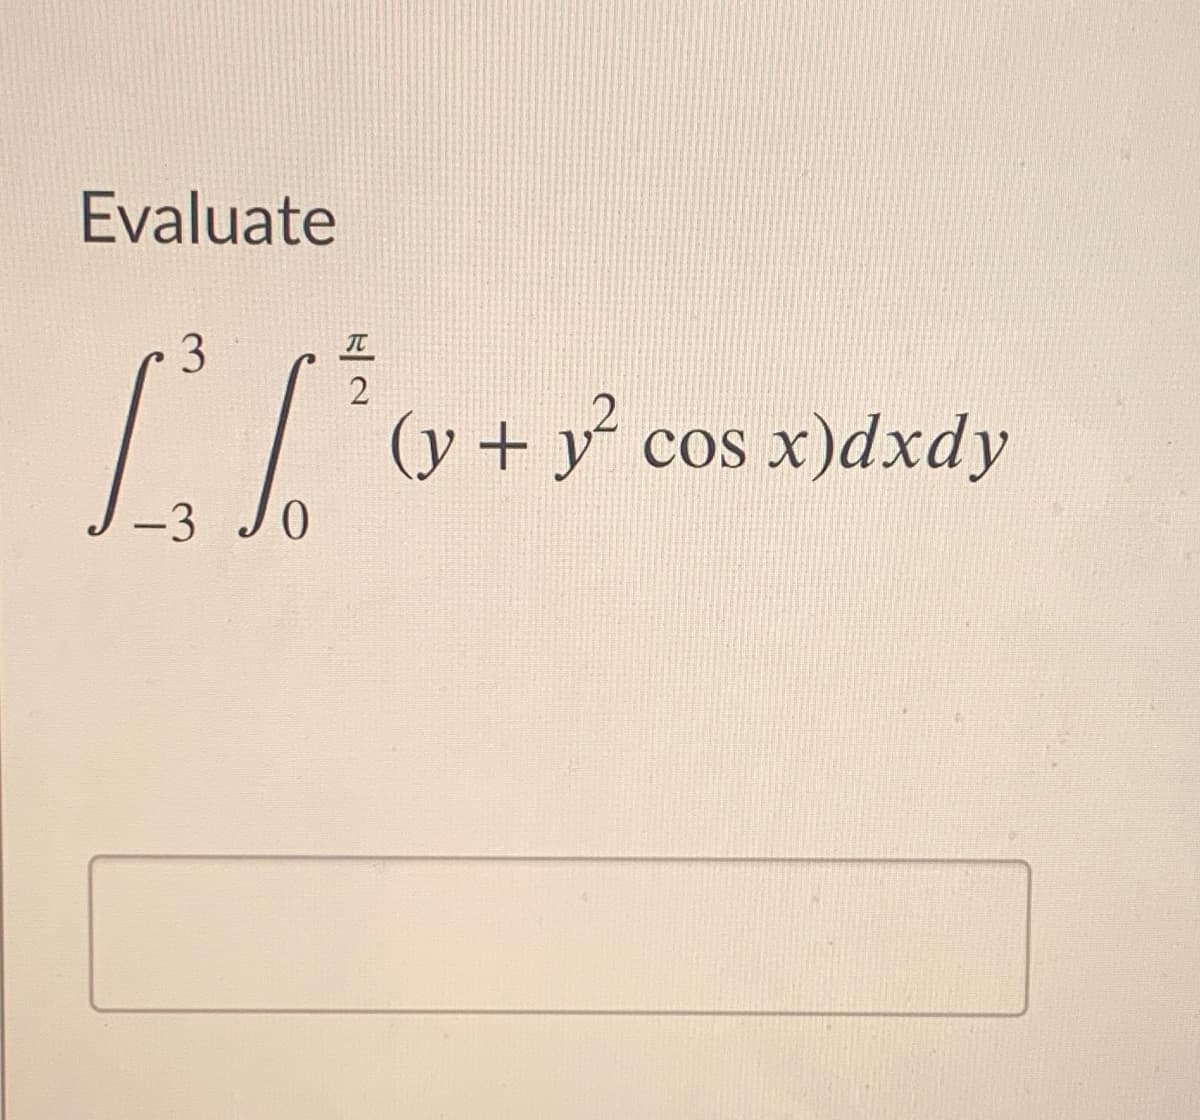 Evaluate
3
(y + y²
cos x)dxdy
Cos
-3
